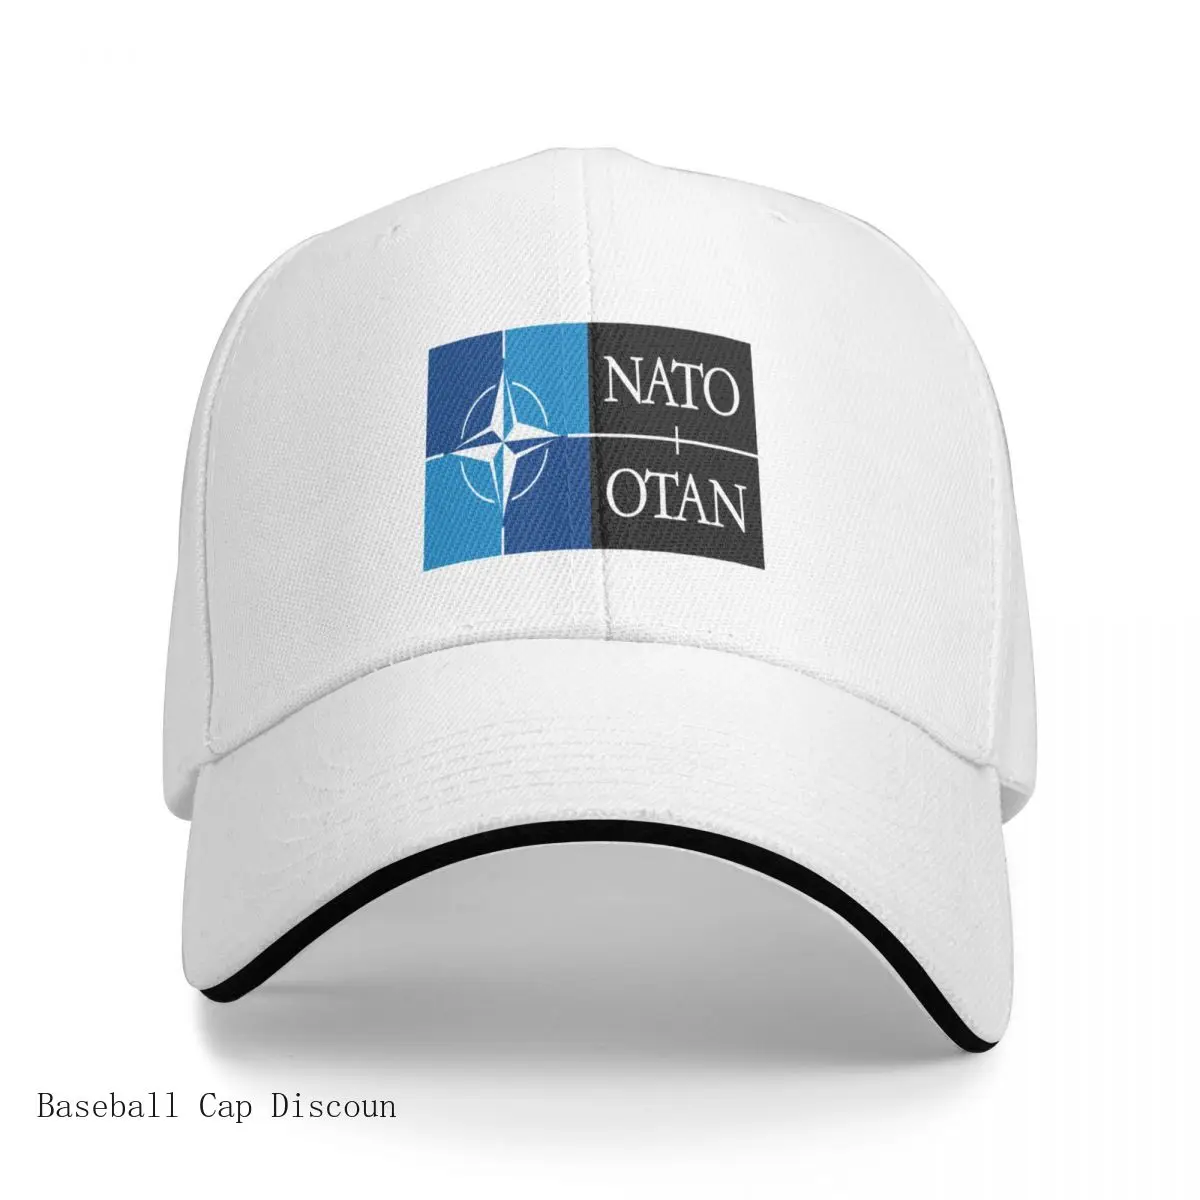 

New NATO-OTAN décoration Cap Baseball Cap golf hat vintage Big size hat hats for women Men's